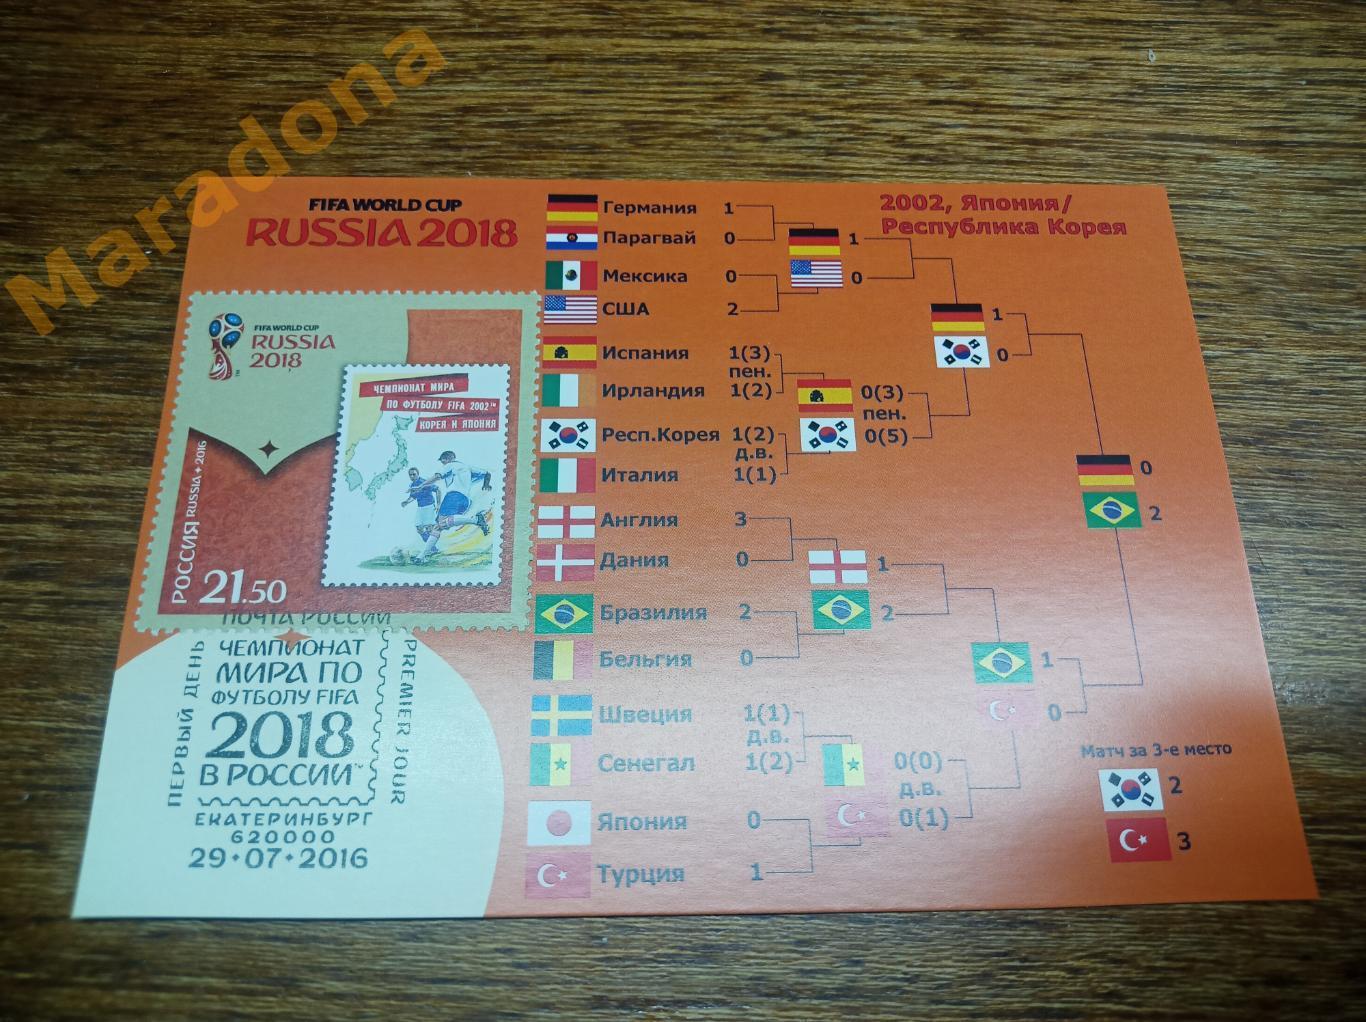 открытка с маркой Чемпионат мира 2018 Япония/Корея 2002 Спецгашение Екатеринбург